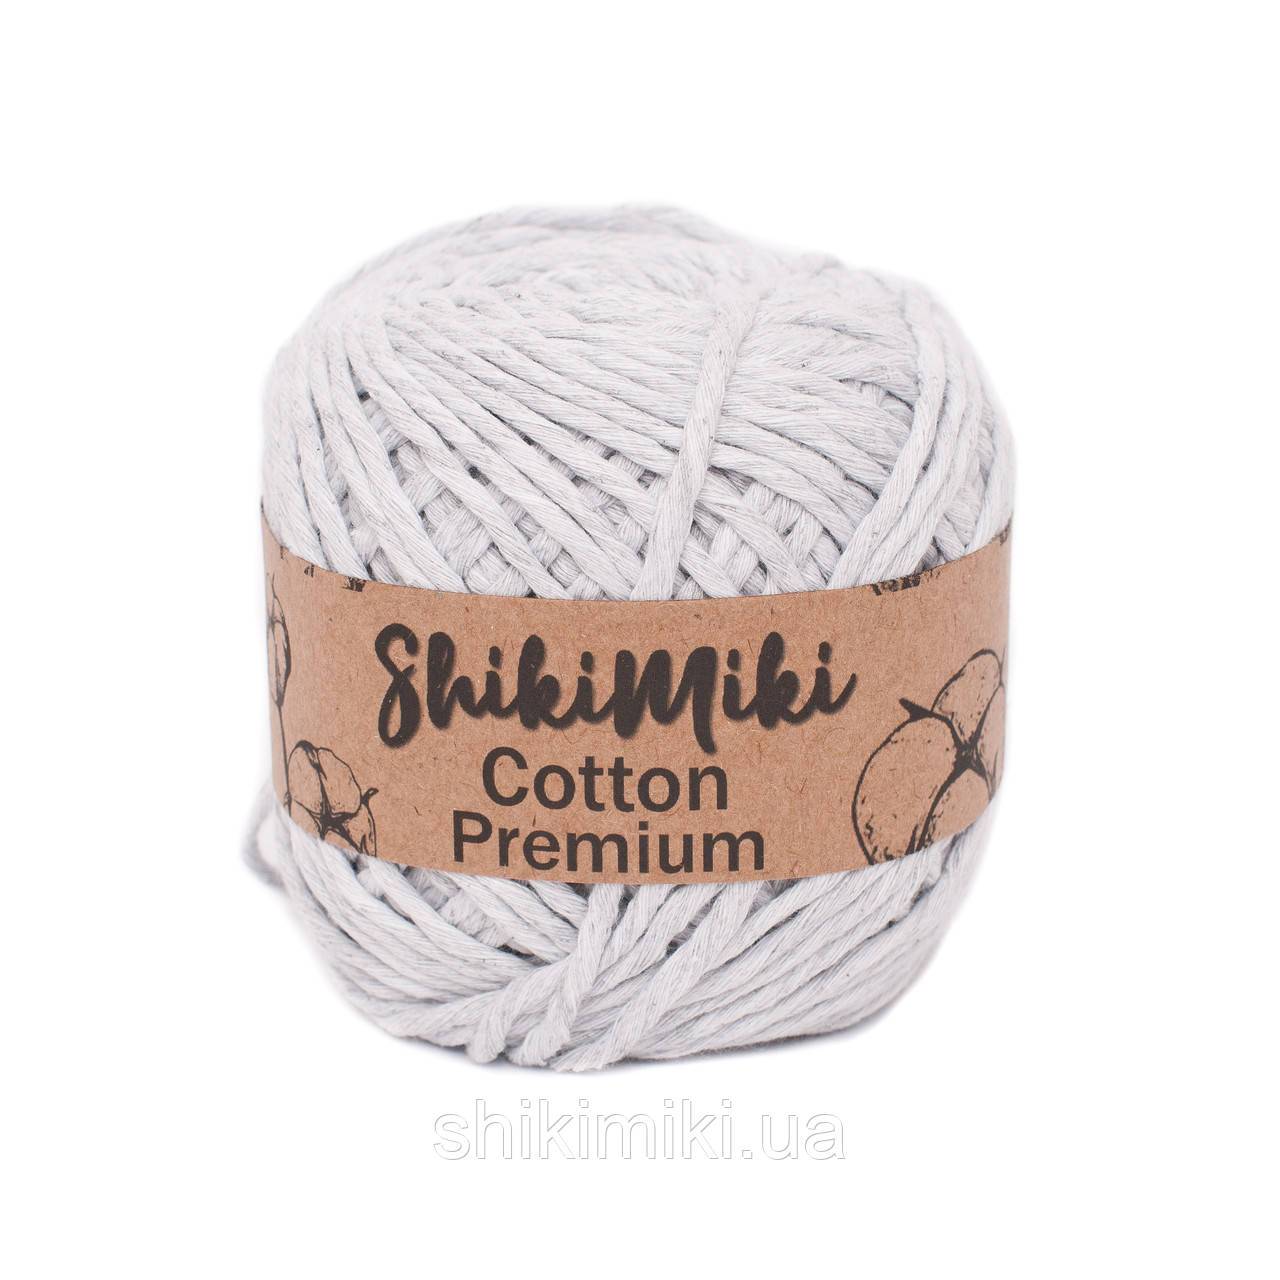 Еко шнур Shikimiki Cotton Premium 2 мм, колір Світло-сірий